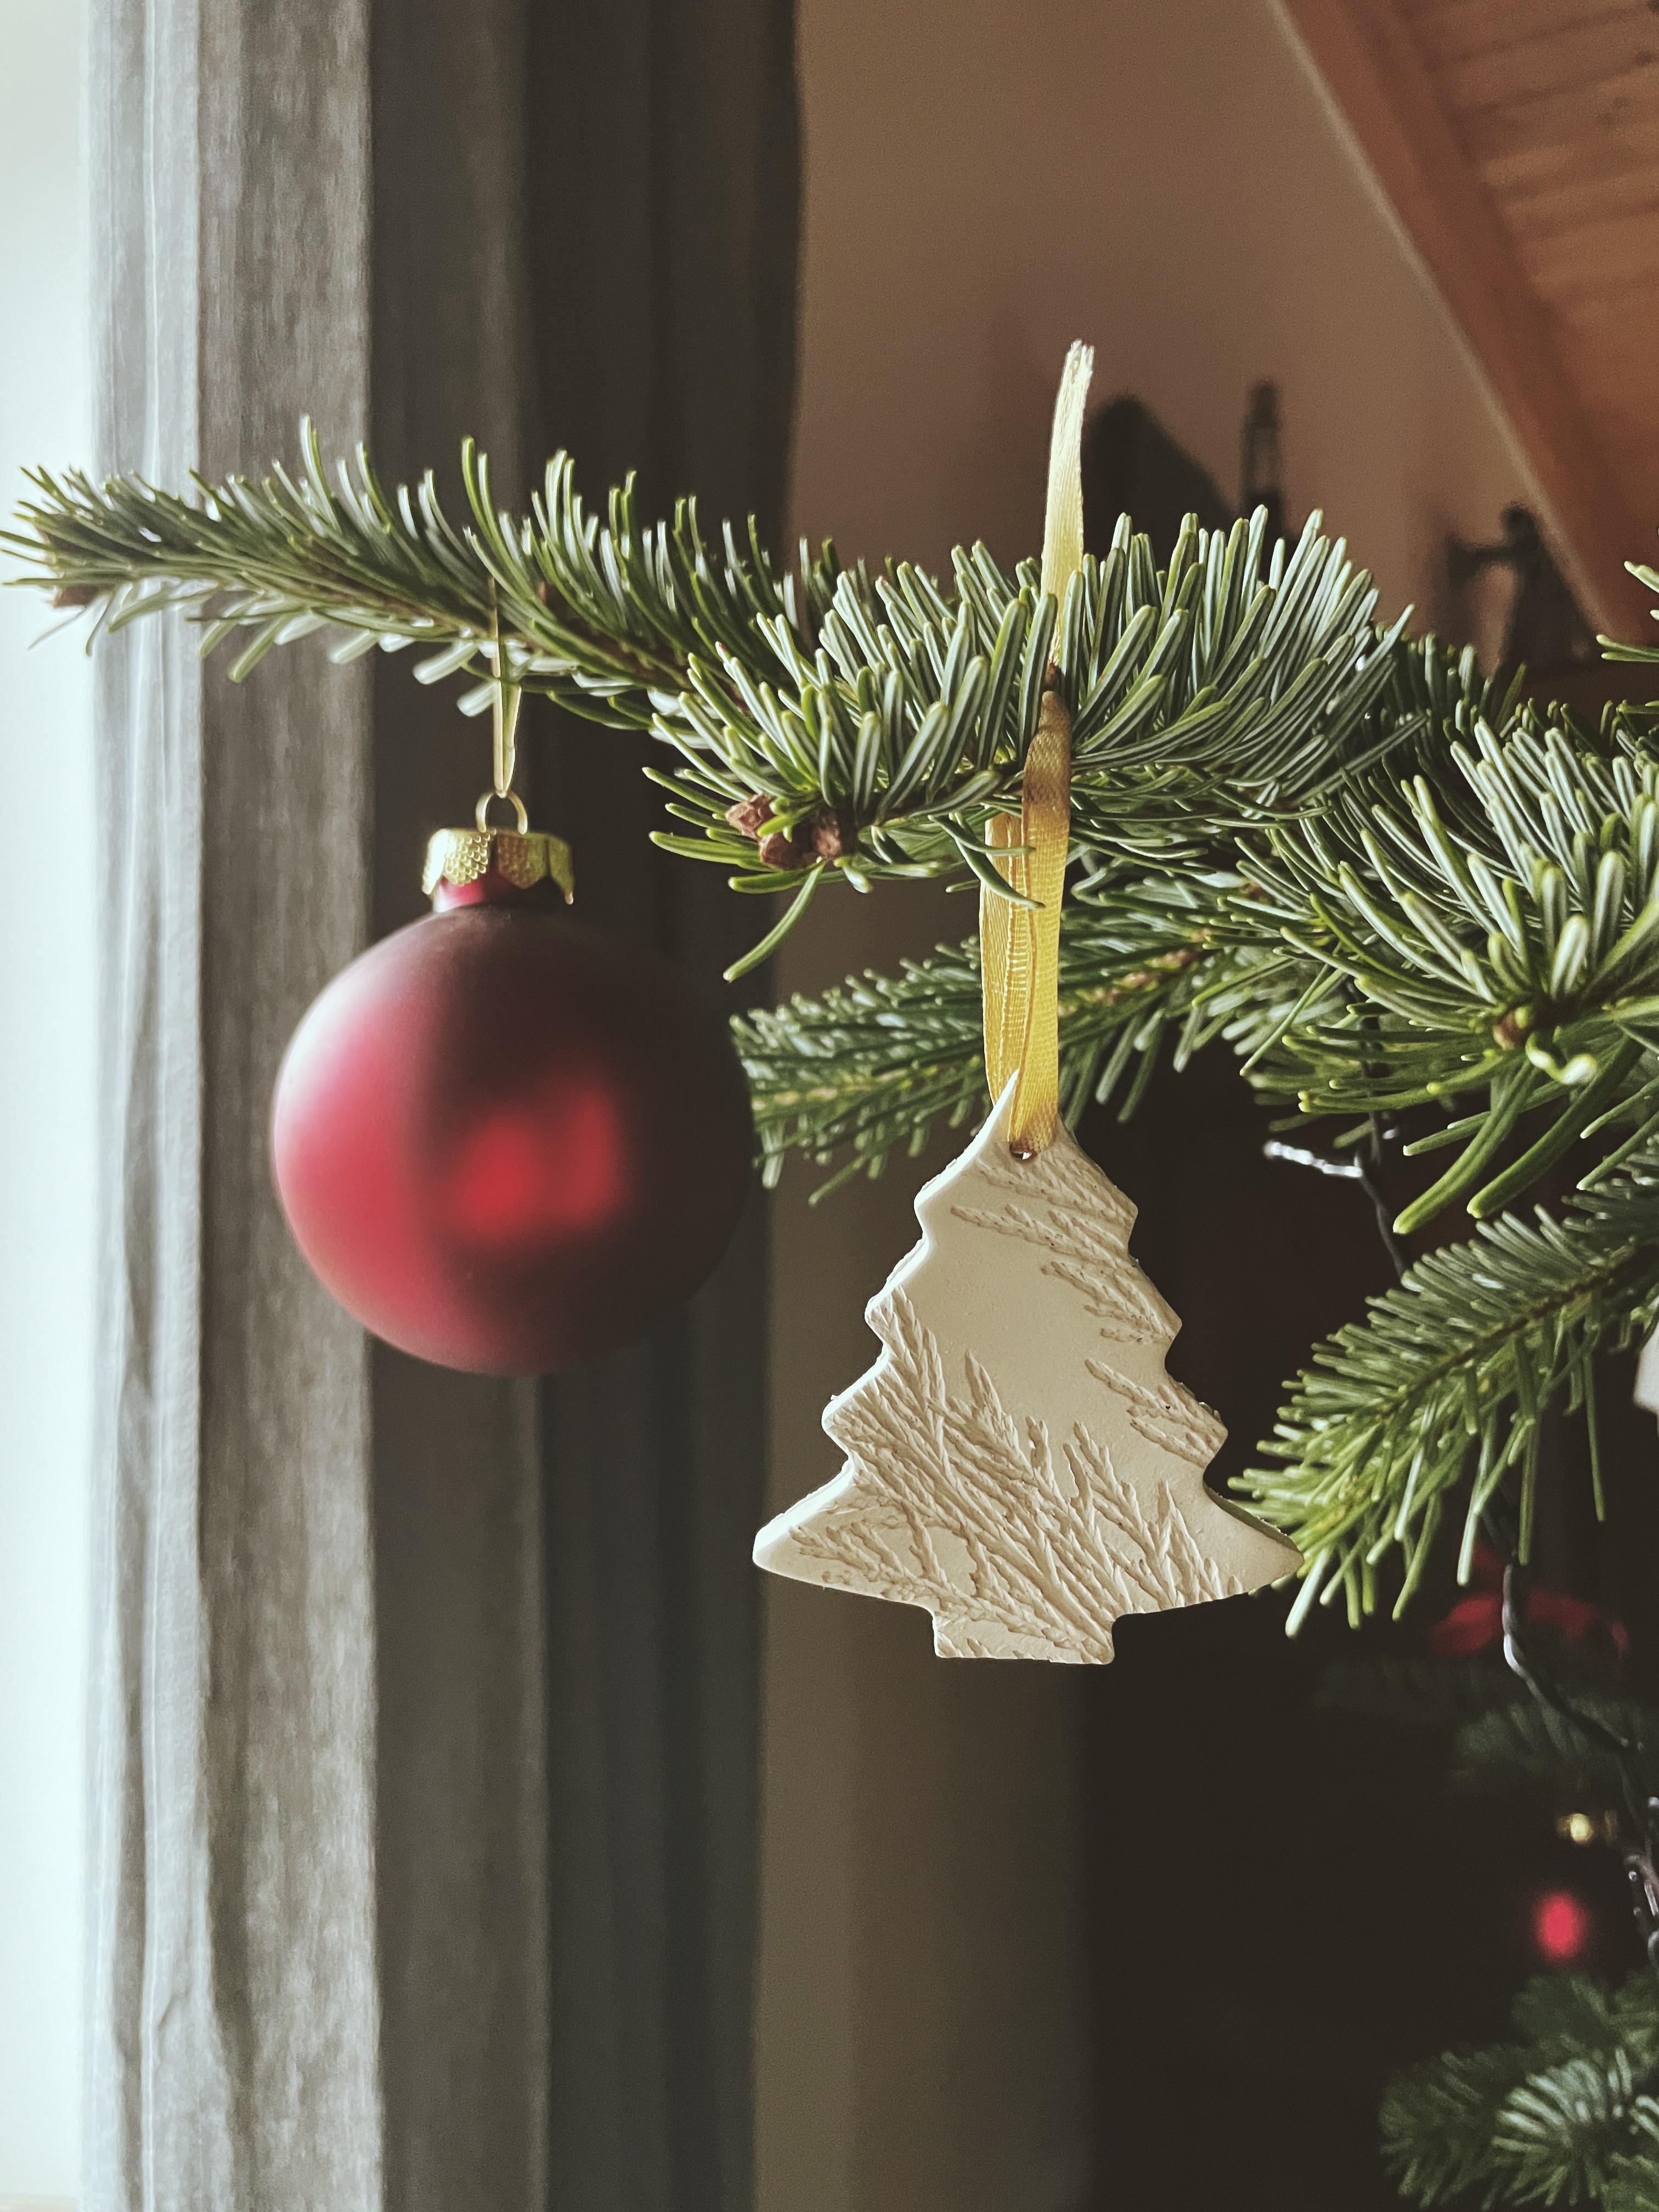 Selfmade Christmas tree ornaments 🎄 

#clay #christmastree #christmasiscoming #diy